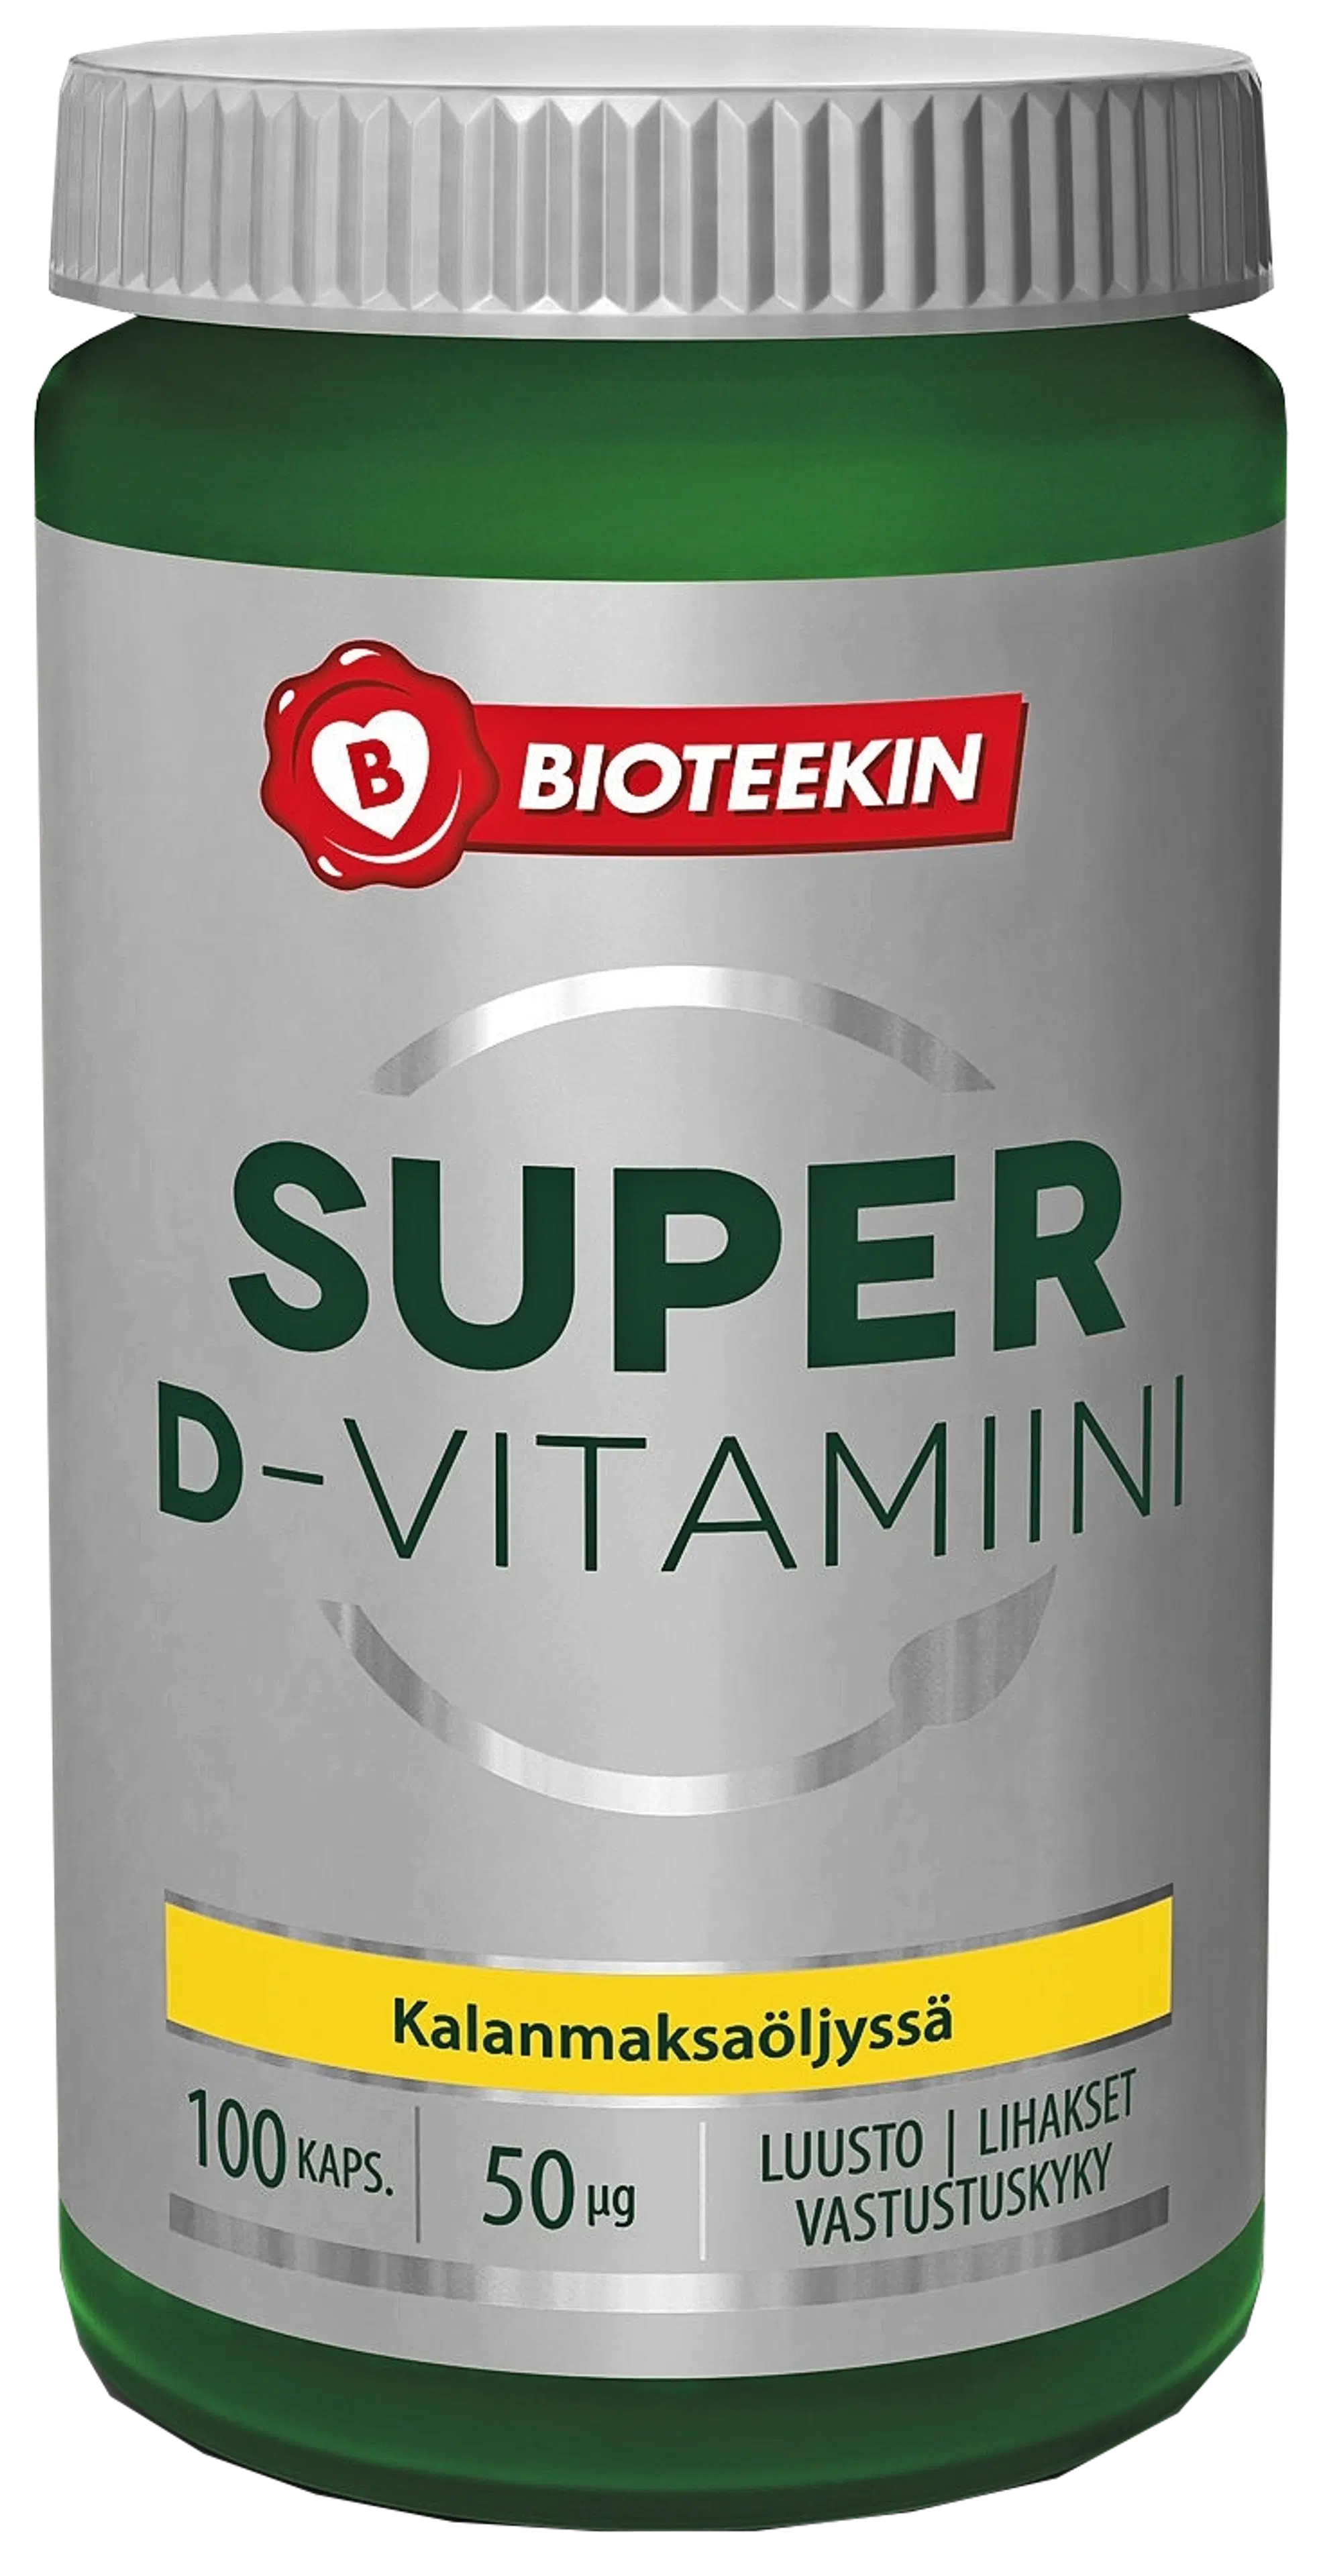 Bioteekin Super D-vitamiinivalmiste 100 kaps.